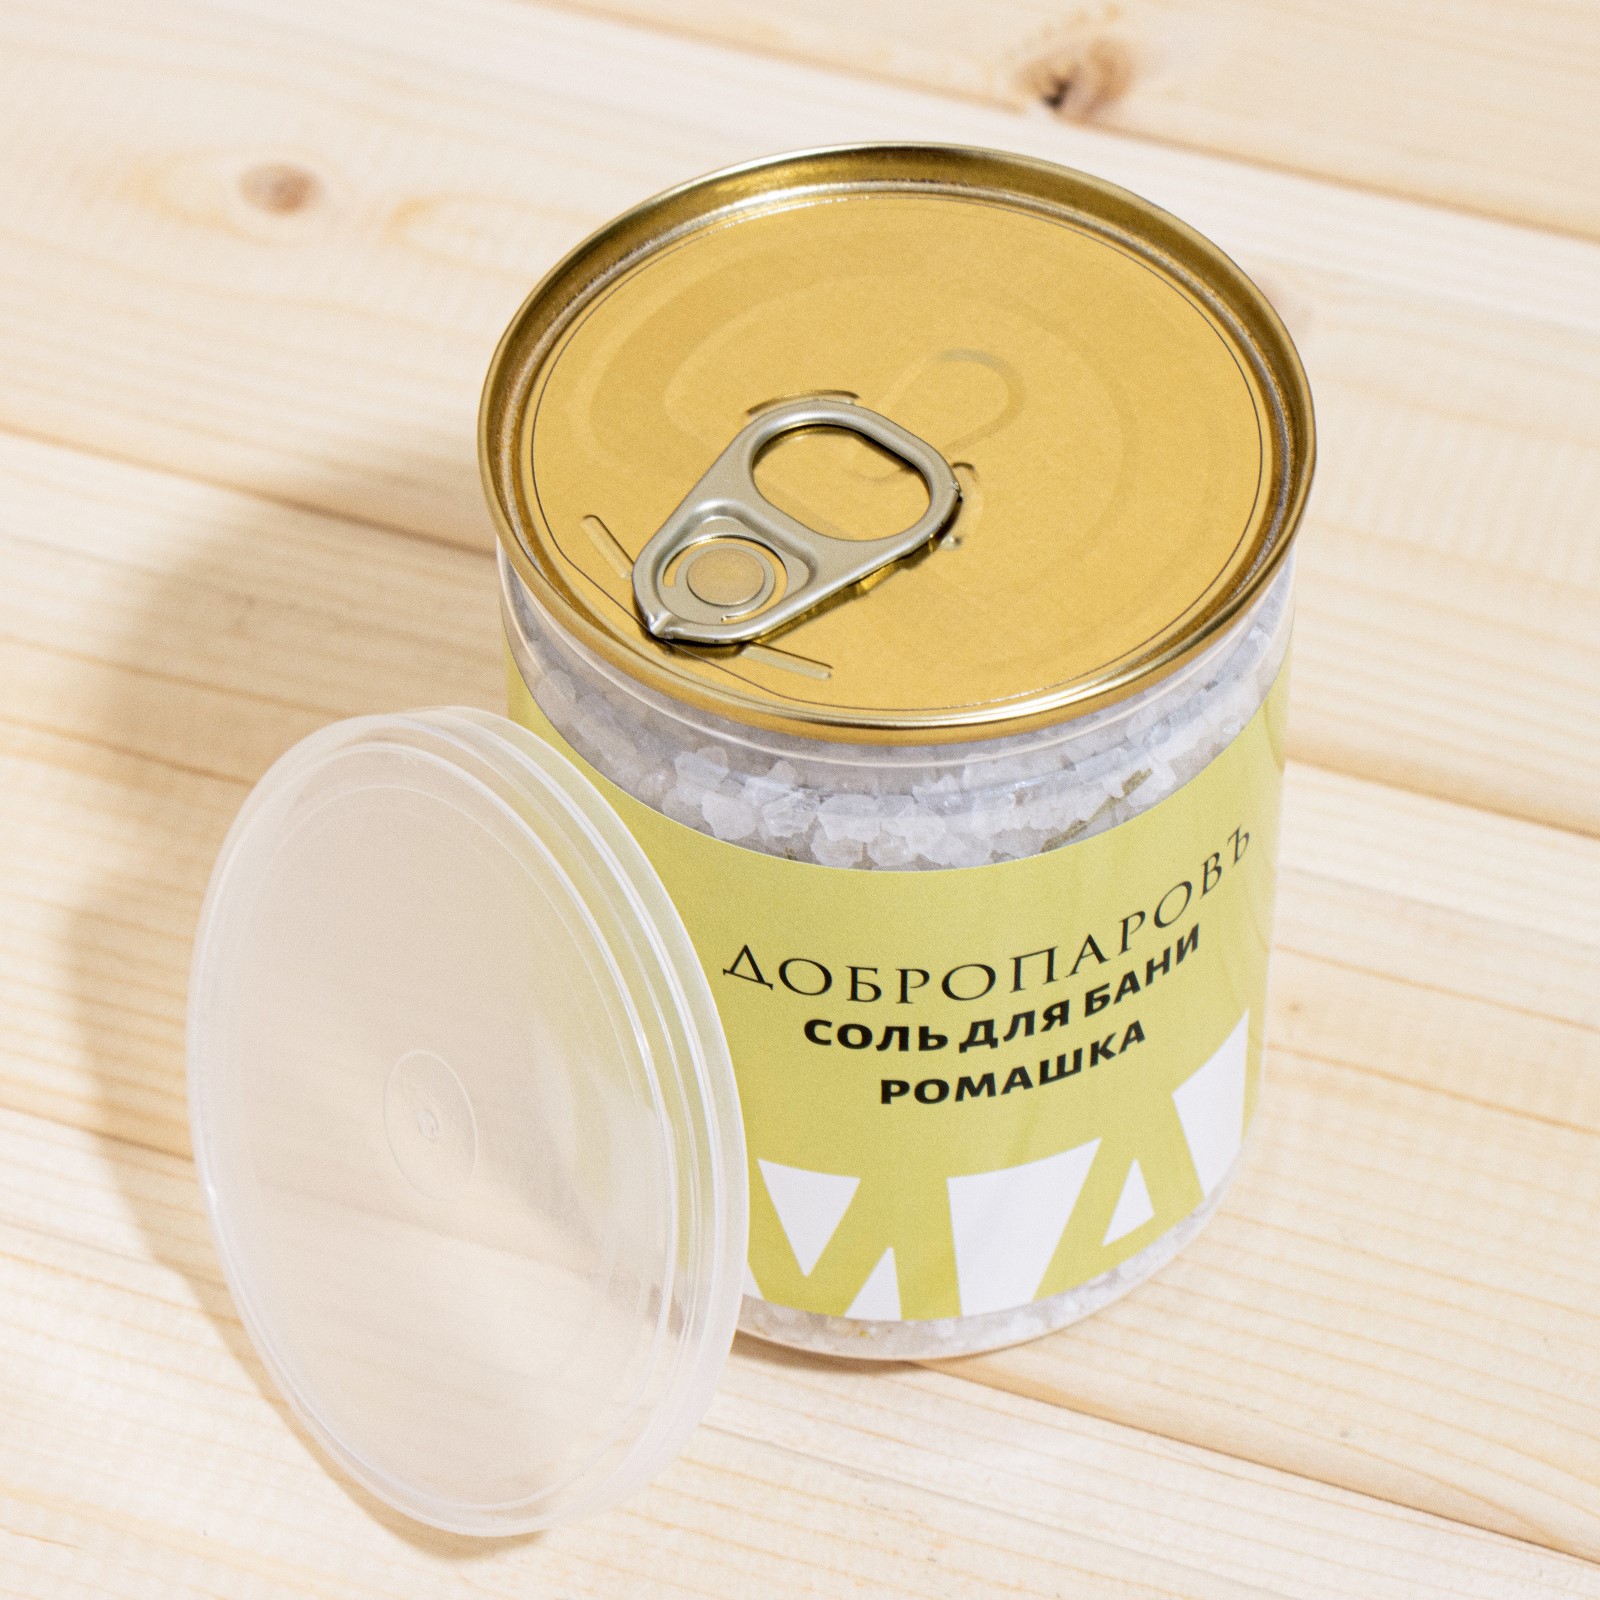 Соль для бани Добропаровъ с травами «Ромашка» в прозрачной в банке 400 гр - фото 2